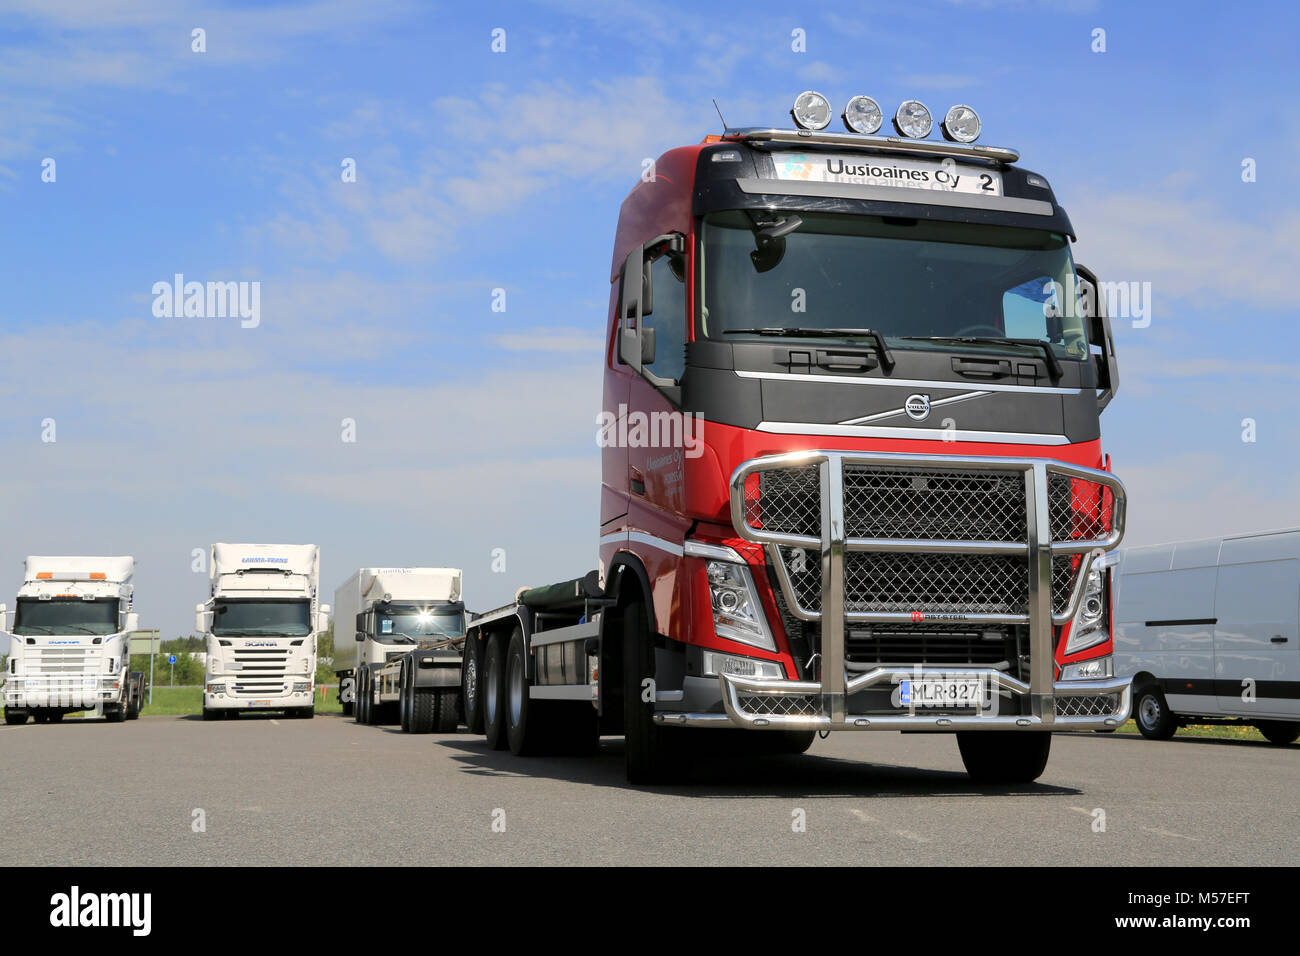 FORSSA, FINLANDE - le 25 mai 2014 : Rouge camion Volvo FH de la société Uusioaines Ltd. Finlands entreprise leader en verre de recyclage est spécialisée dans la colle Banque D'Images